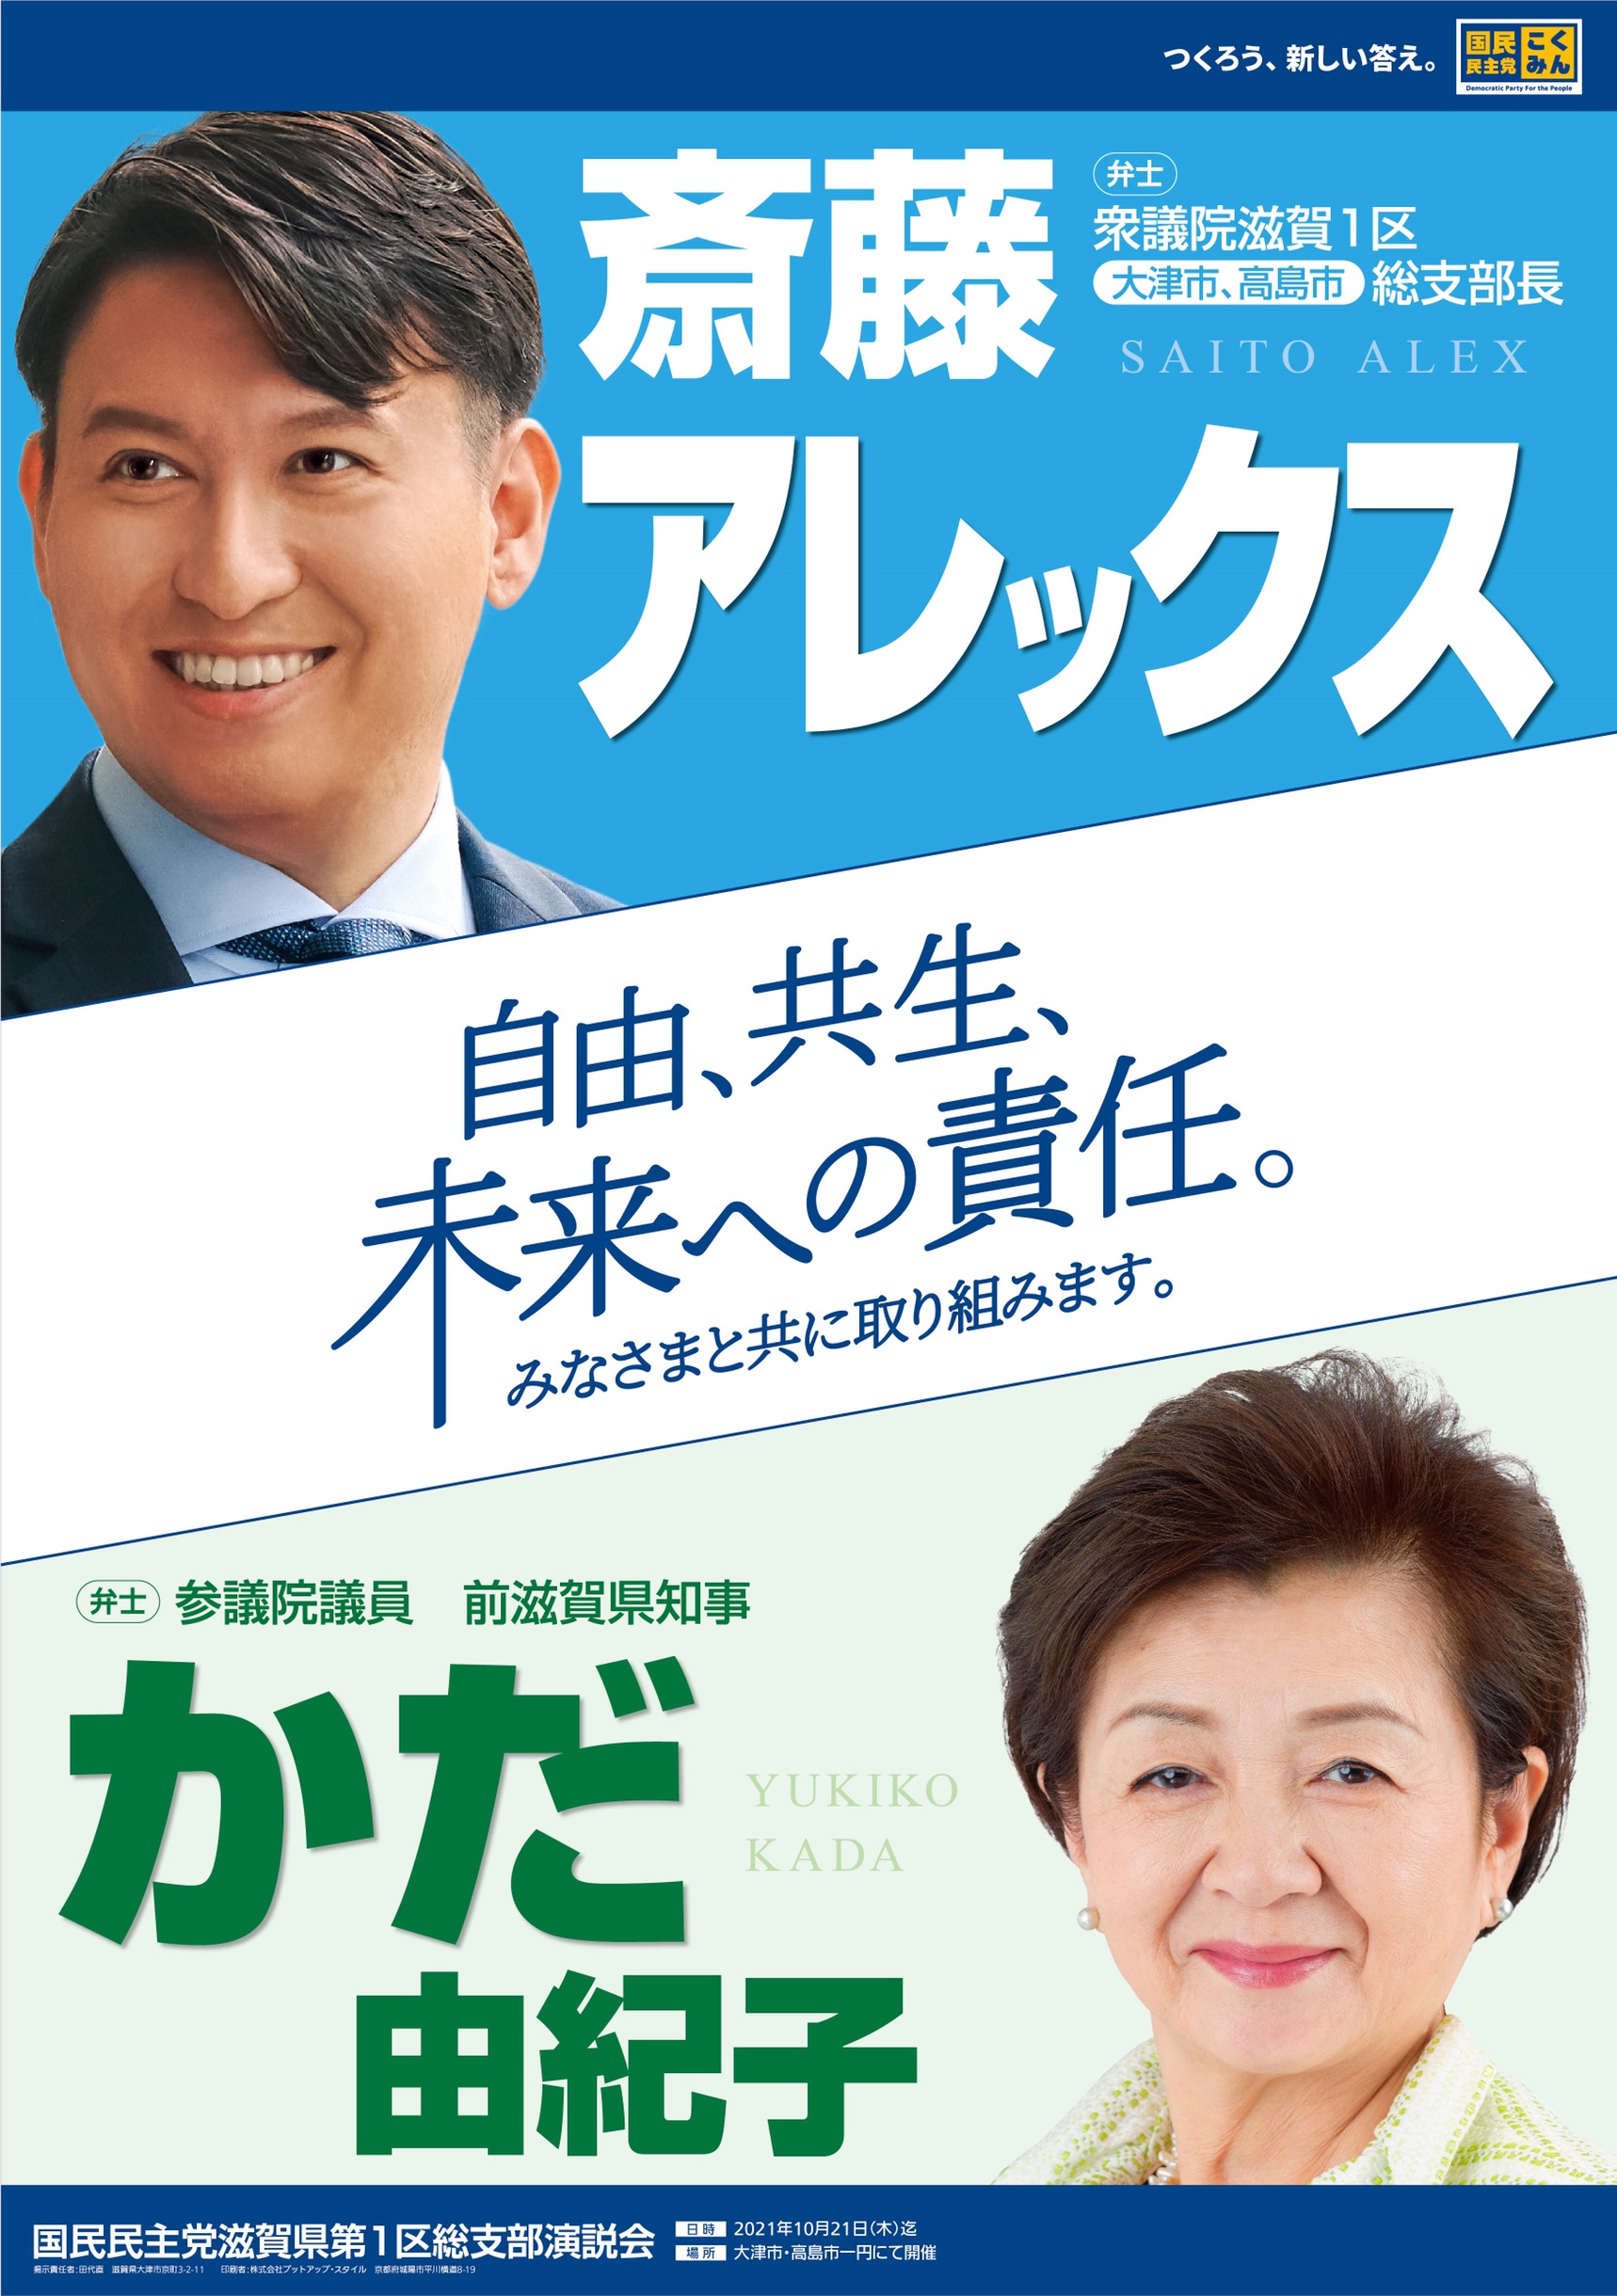 年11月21日 国民民主党の斎藤アレックス滋賀県第1区総支部長とのポスターを頂きました 嘉田由紀子